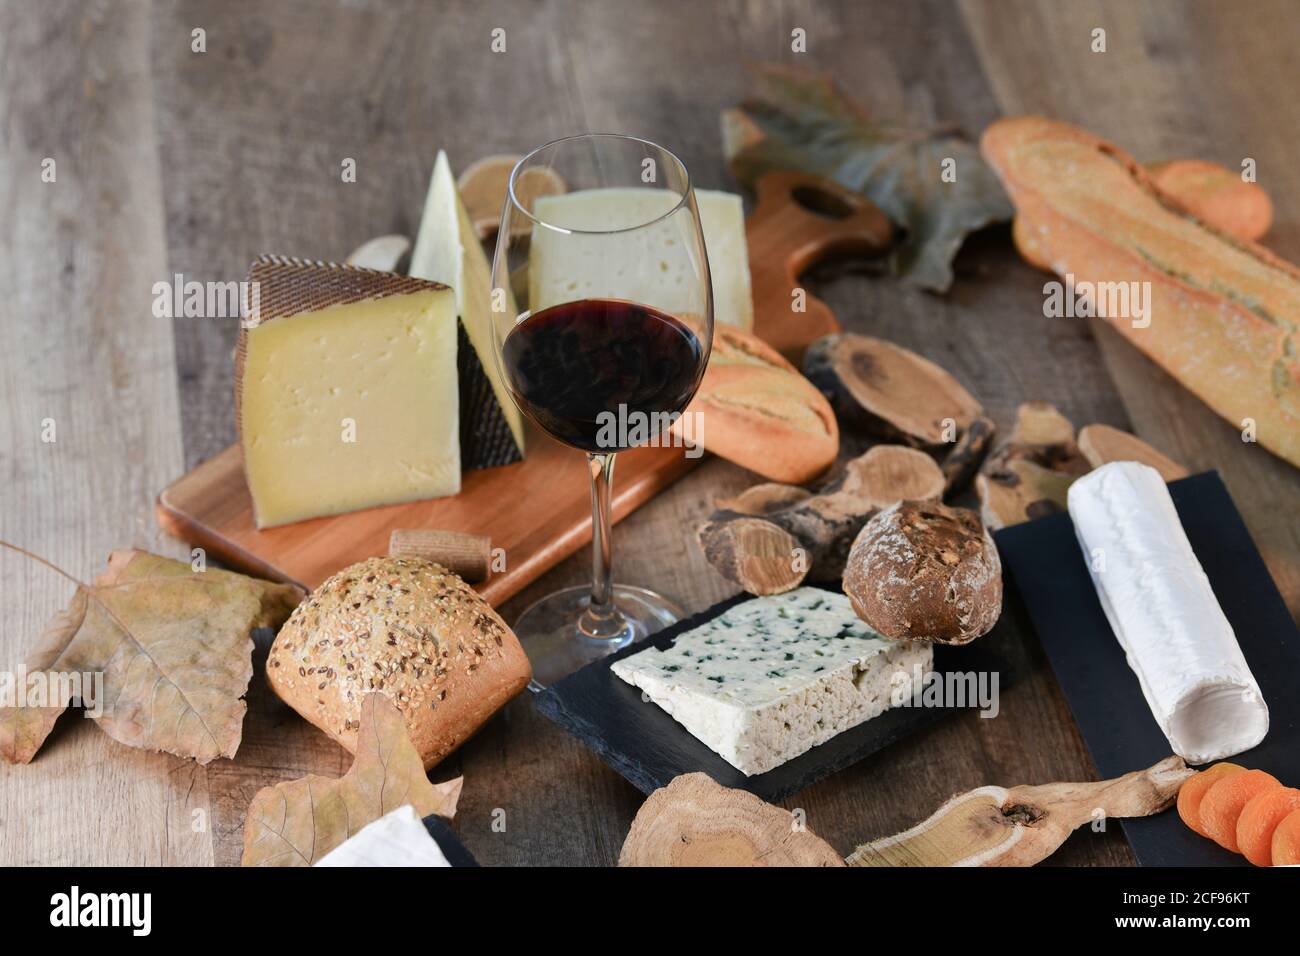 De ci-dessus savoureuses tranches maison de fromage blanc et frais pain croustillant avec bouteille et verre de vin rouge table rustique en bois Banque D'Images